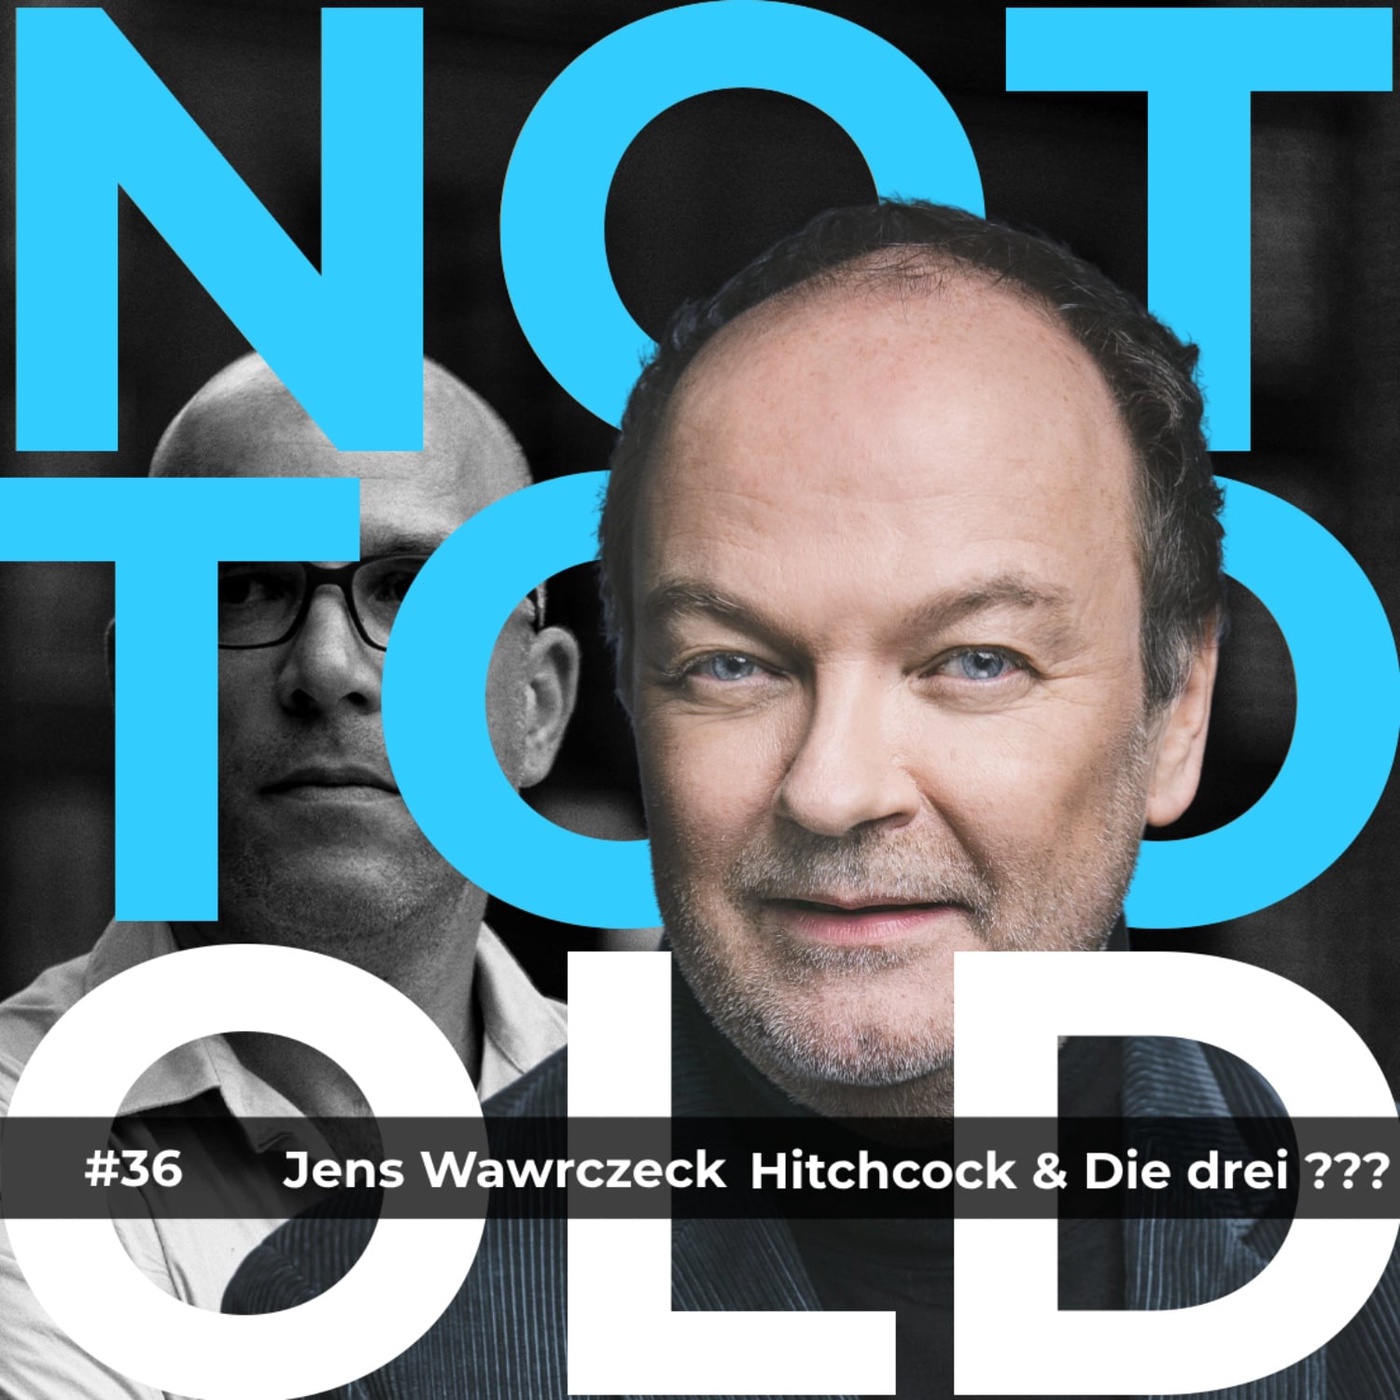 #36 Hitchcock & Die drei ??? - Jens Wawrczeck